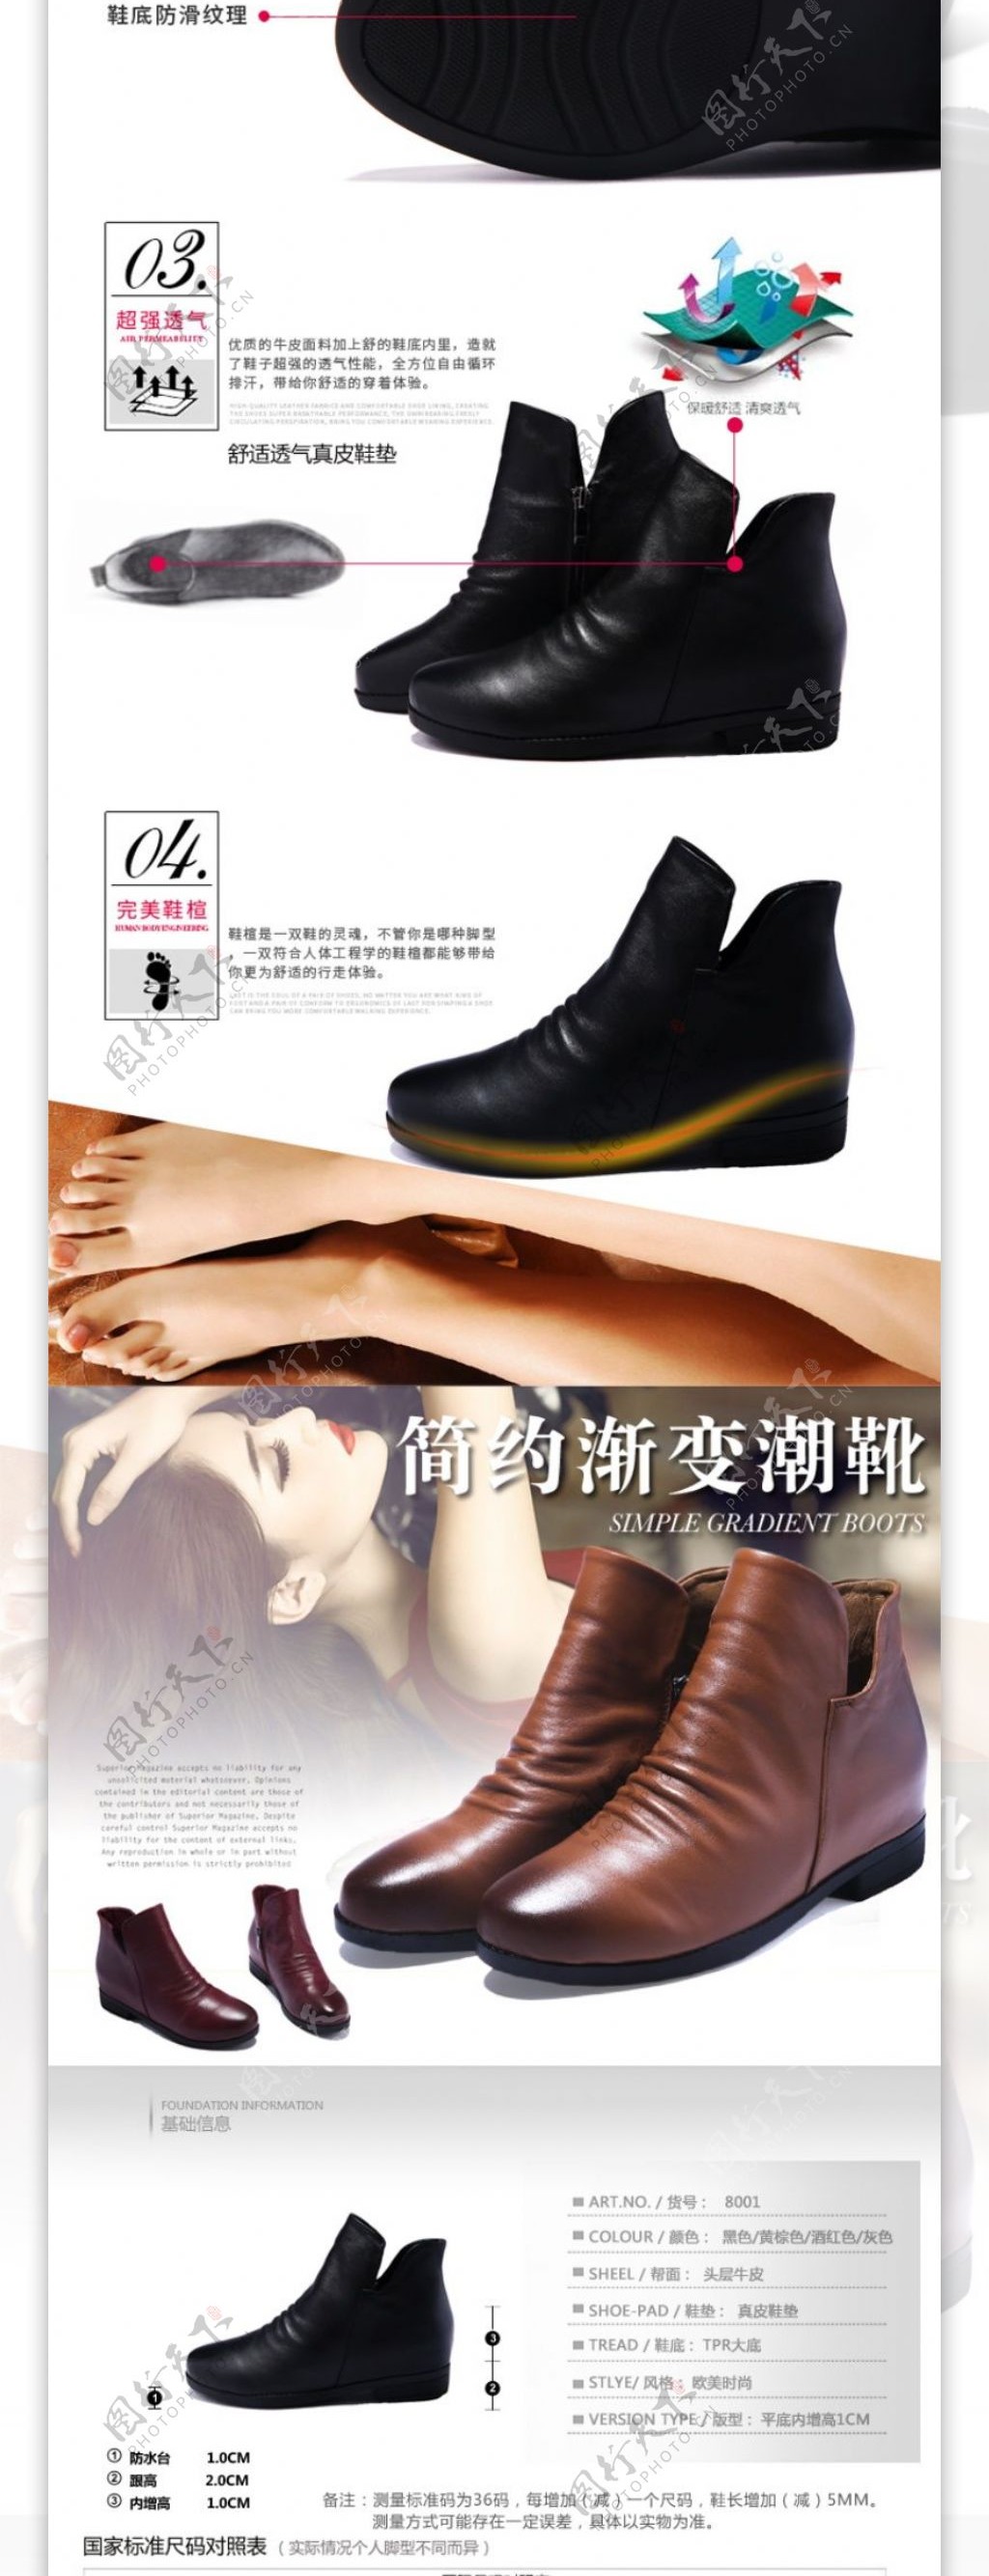 女人的专属女鞋详情页PSD素材下载